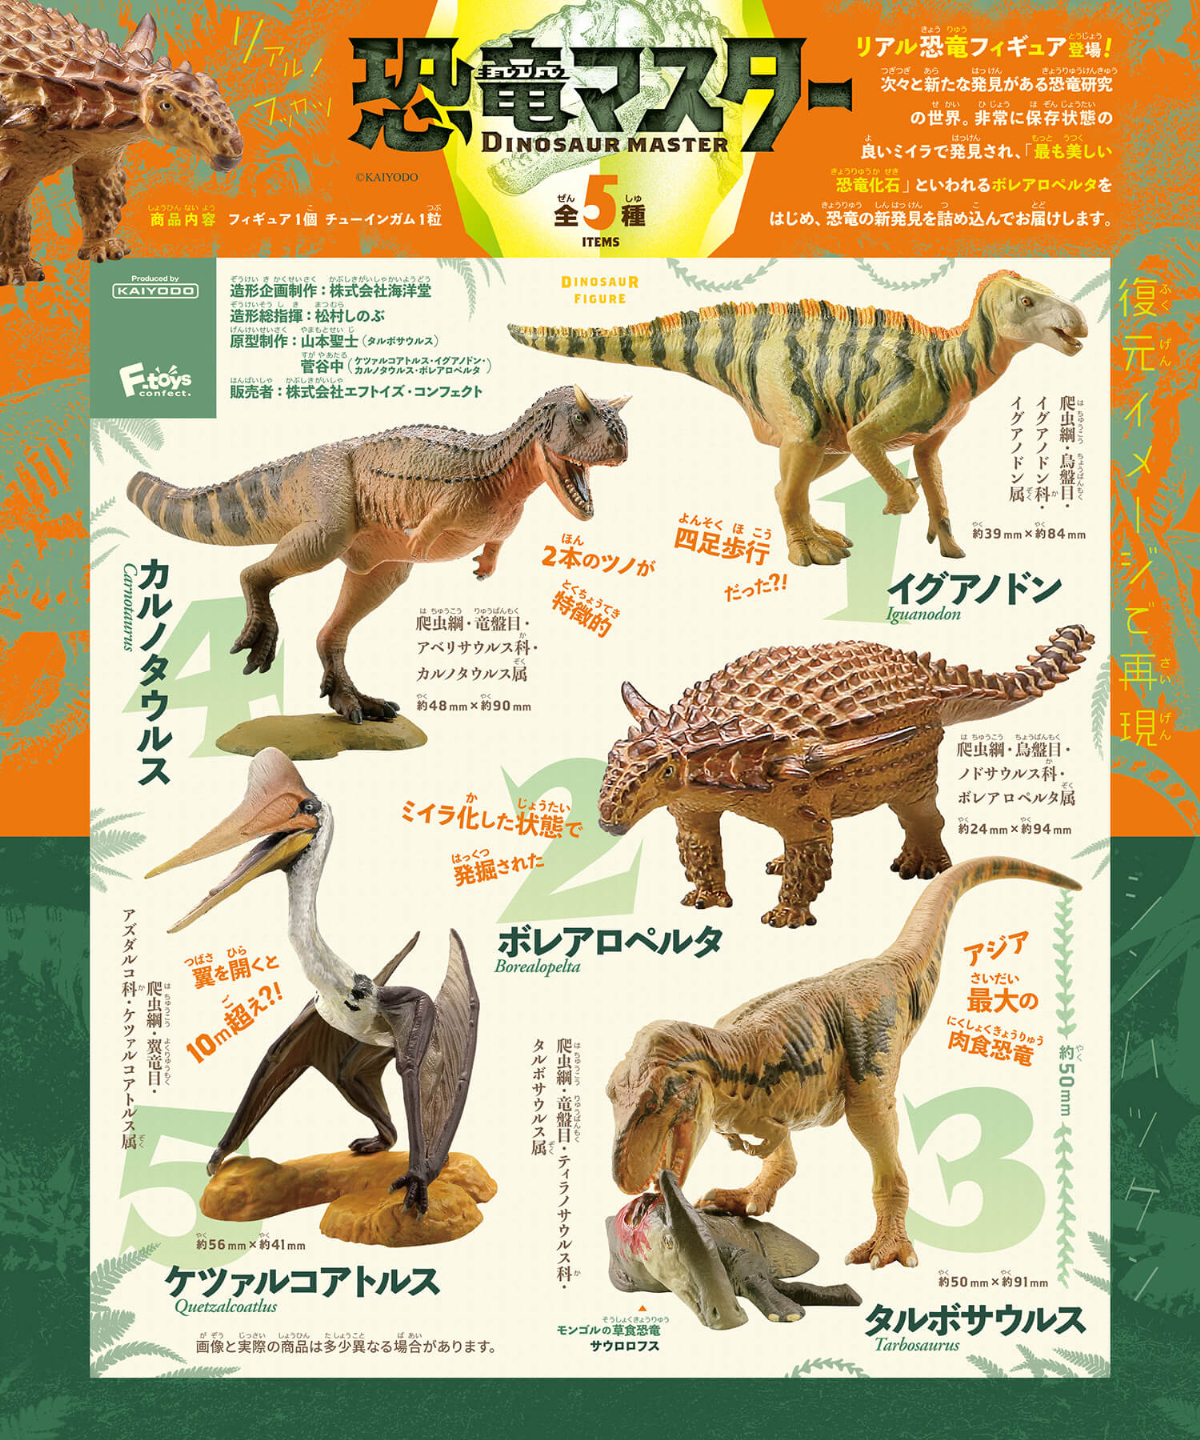 本格恐竜食玩フィギュア「恐竜マスター」第2弾